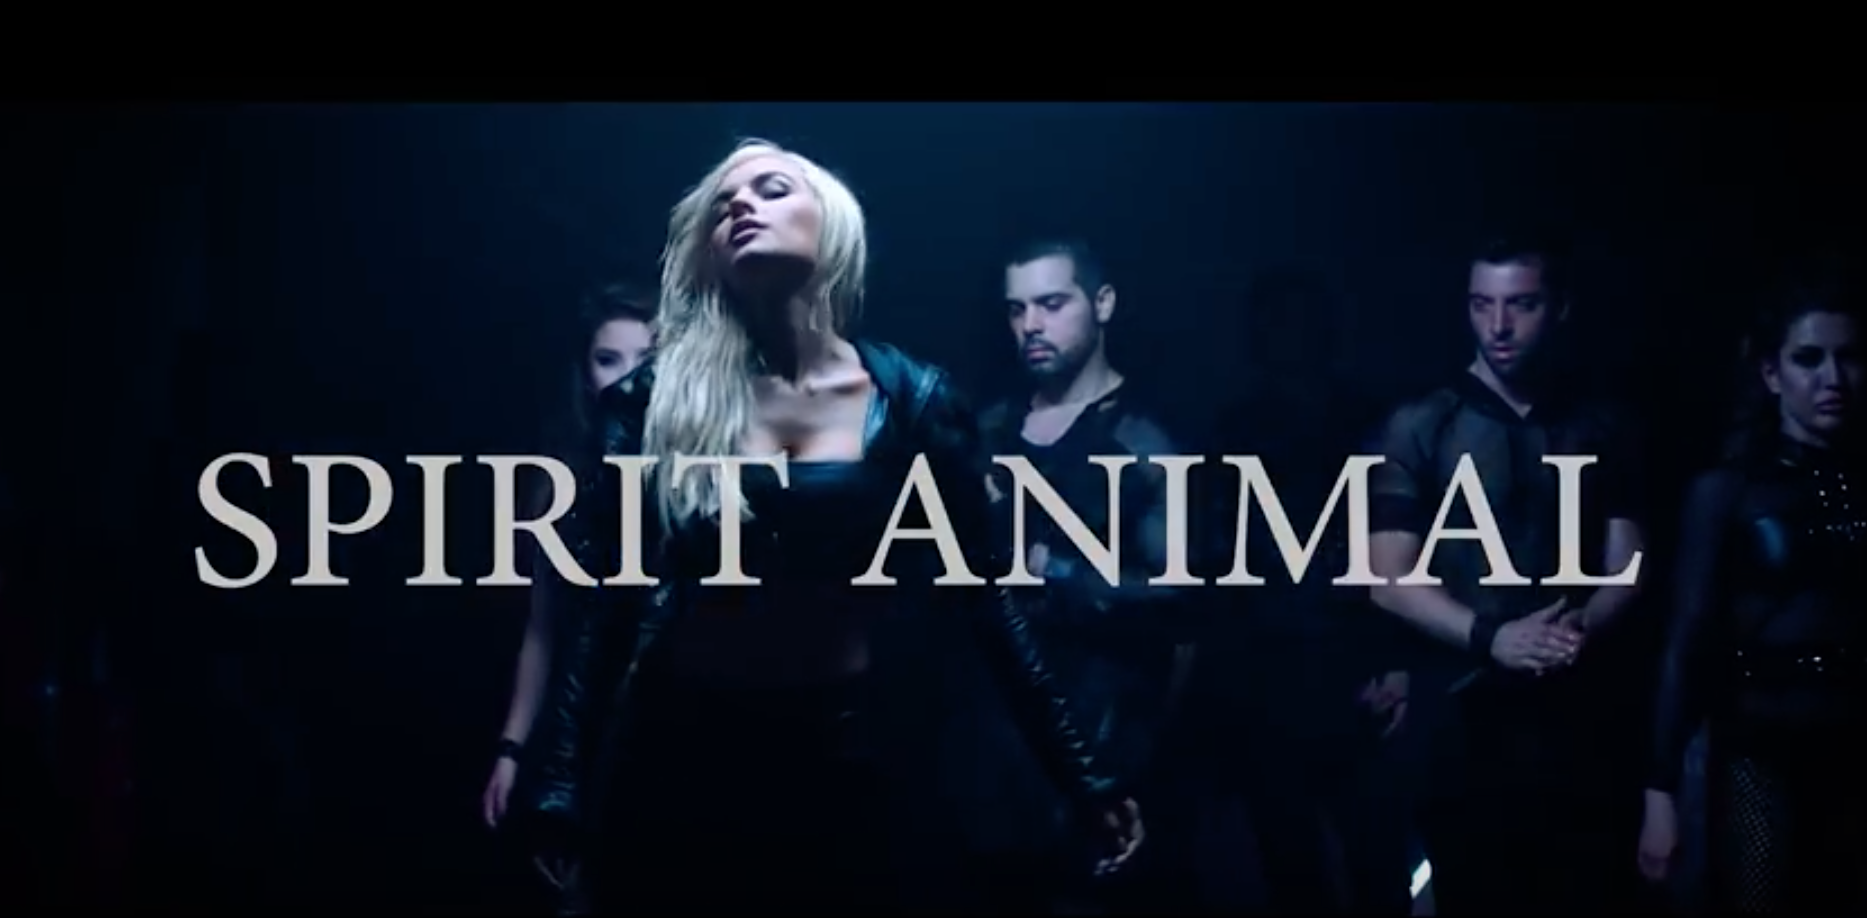 Singer Jean Watts is wearing Ritual Fashion in her "Spirit Animal" music video